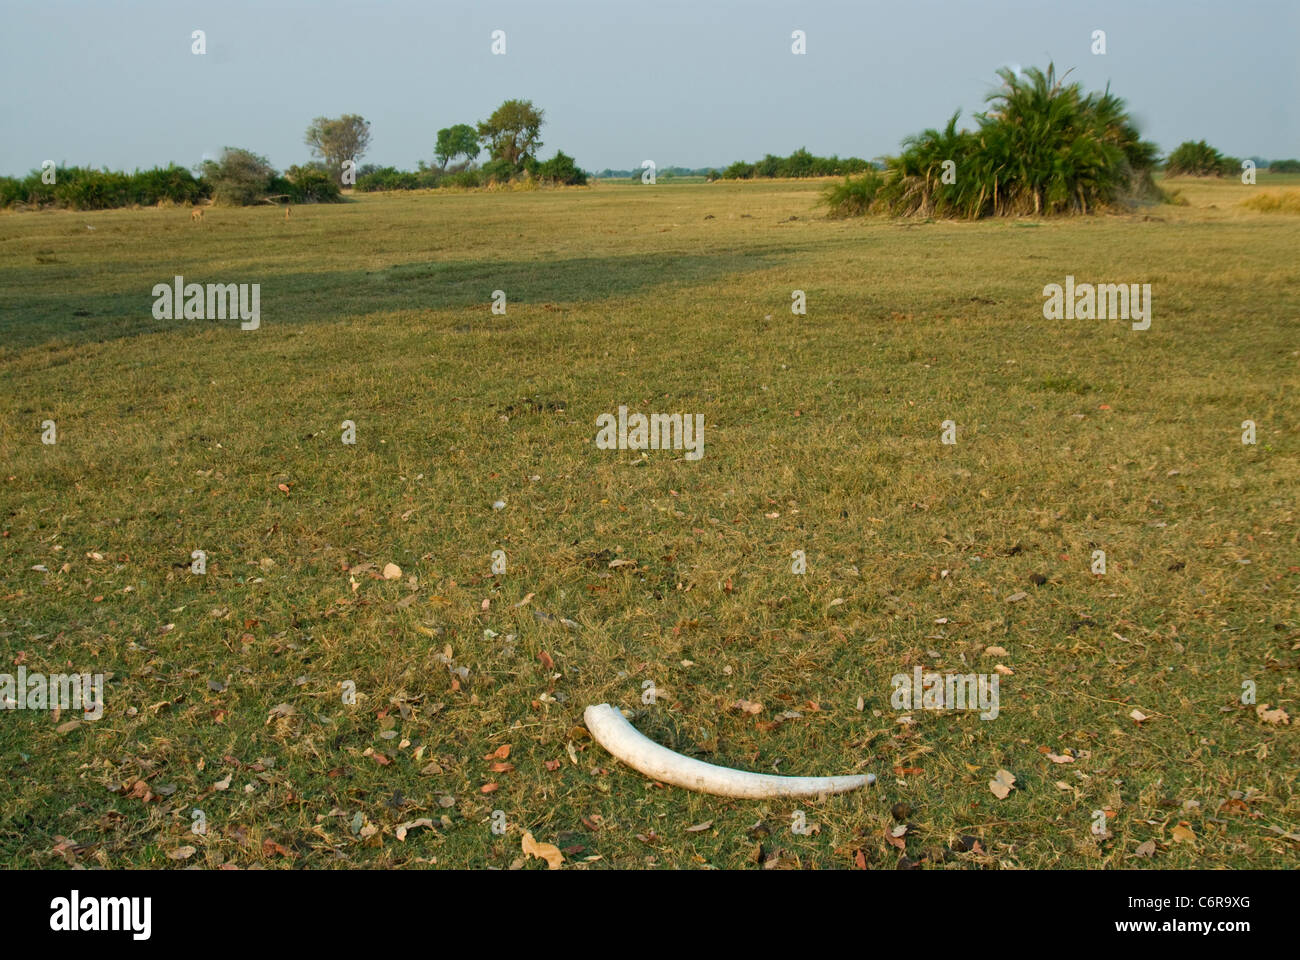 Elephant tusk lying on the Okavango floodplain Stock Photo